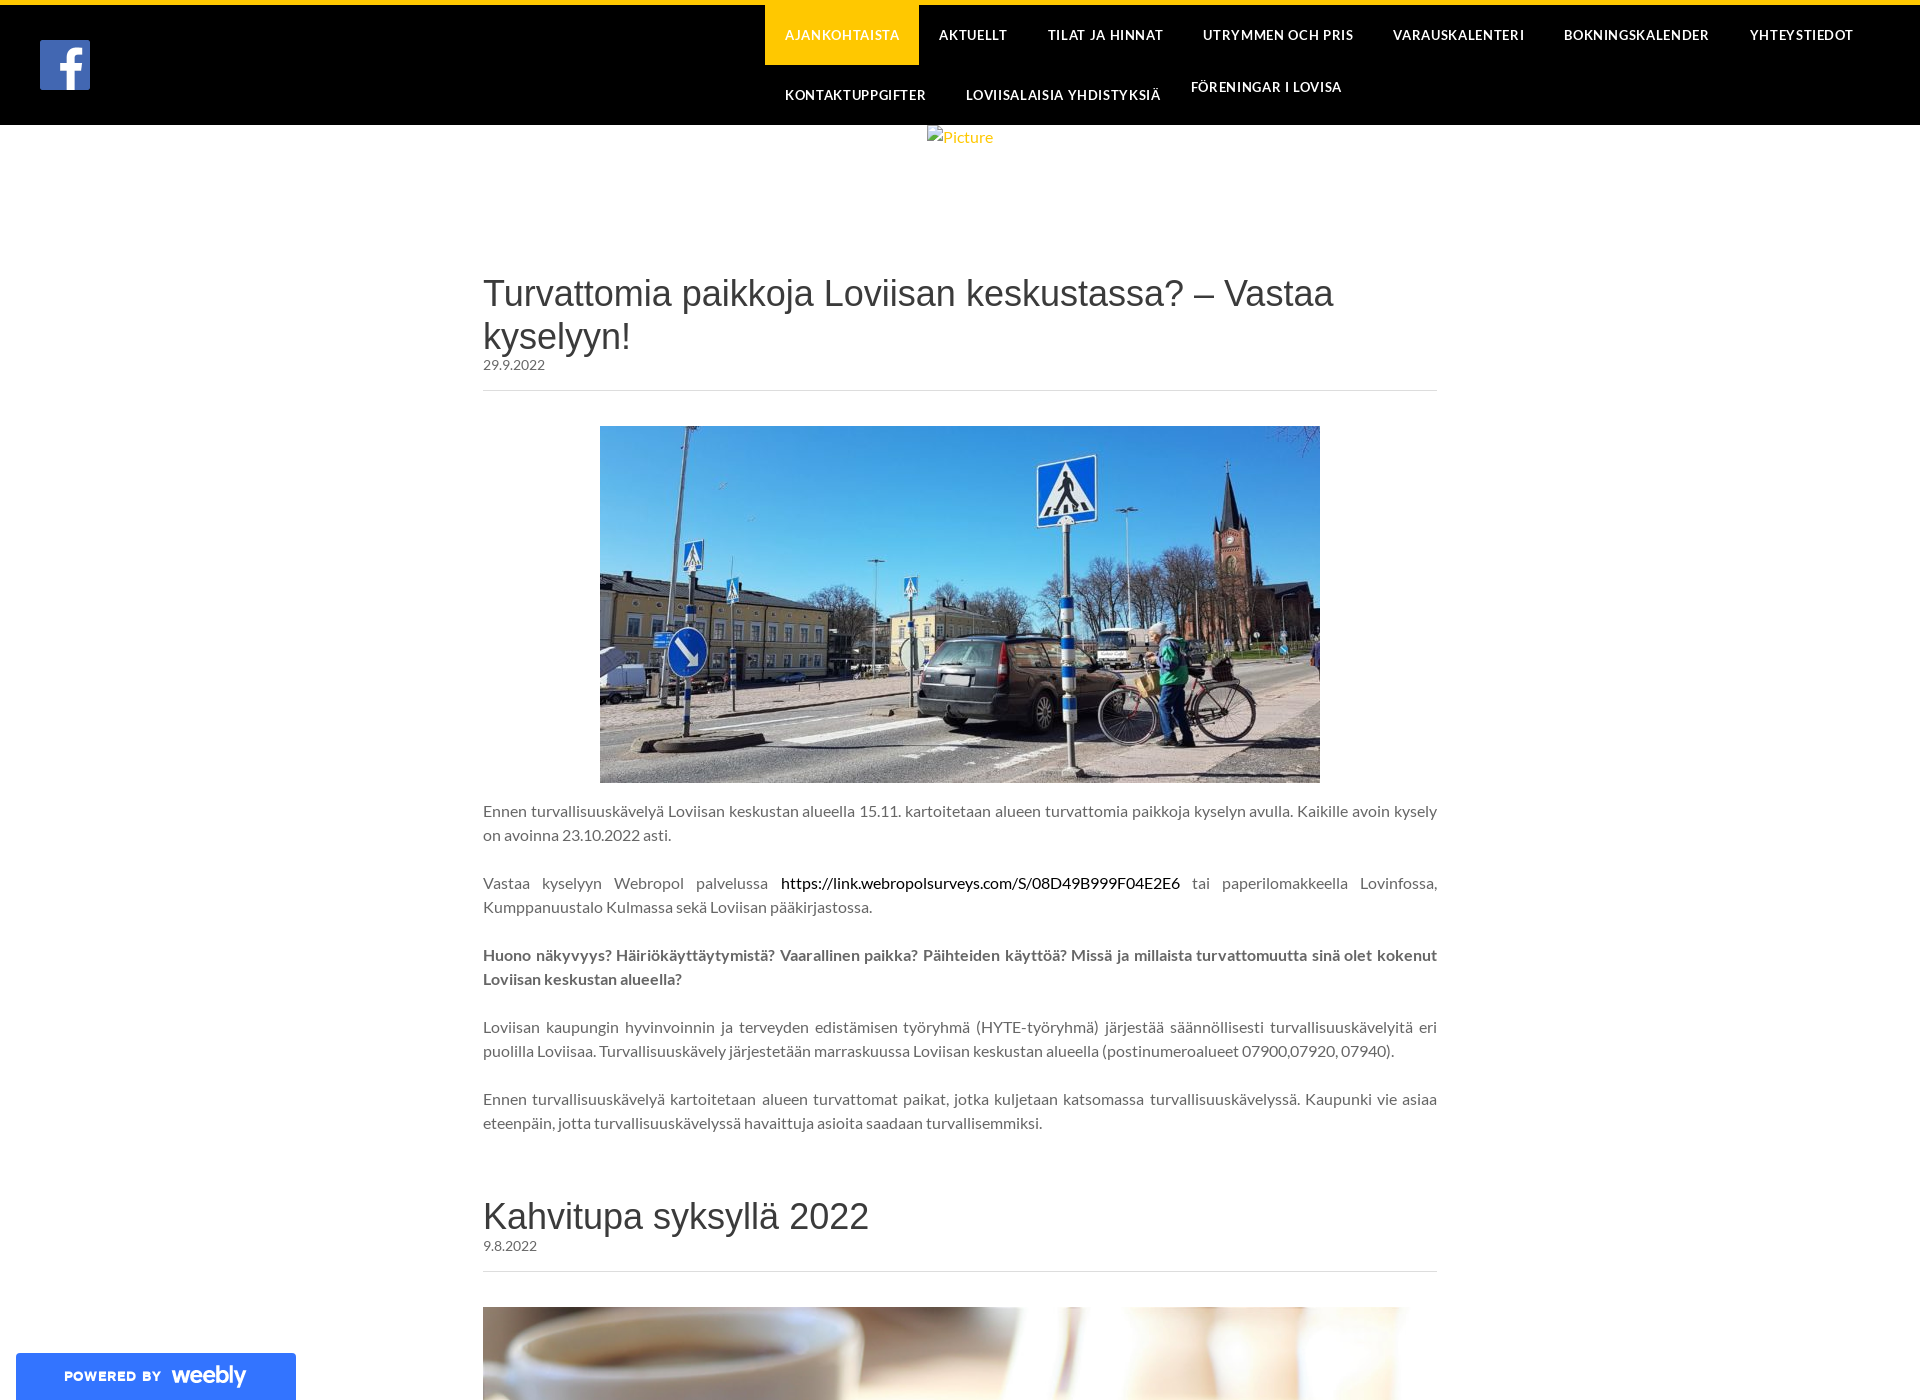 Skärmdump för kumppanuustalokulma.fi